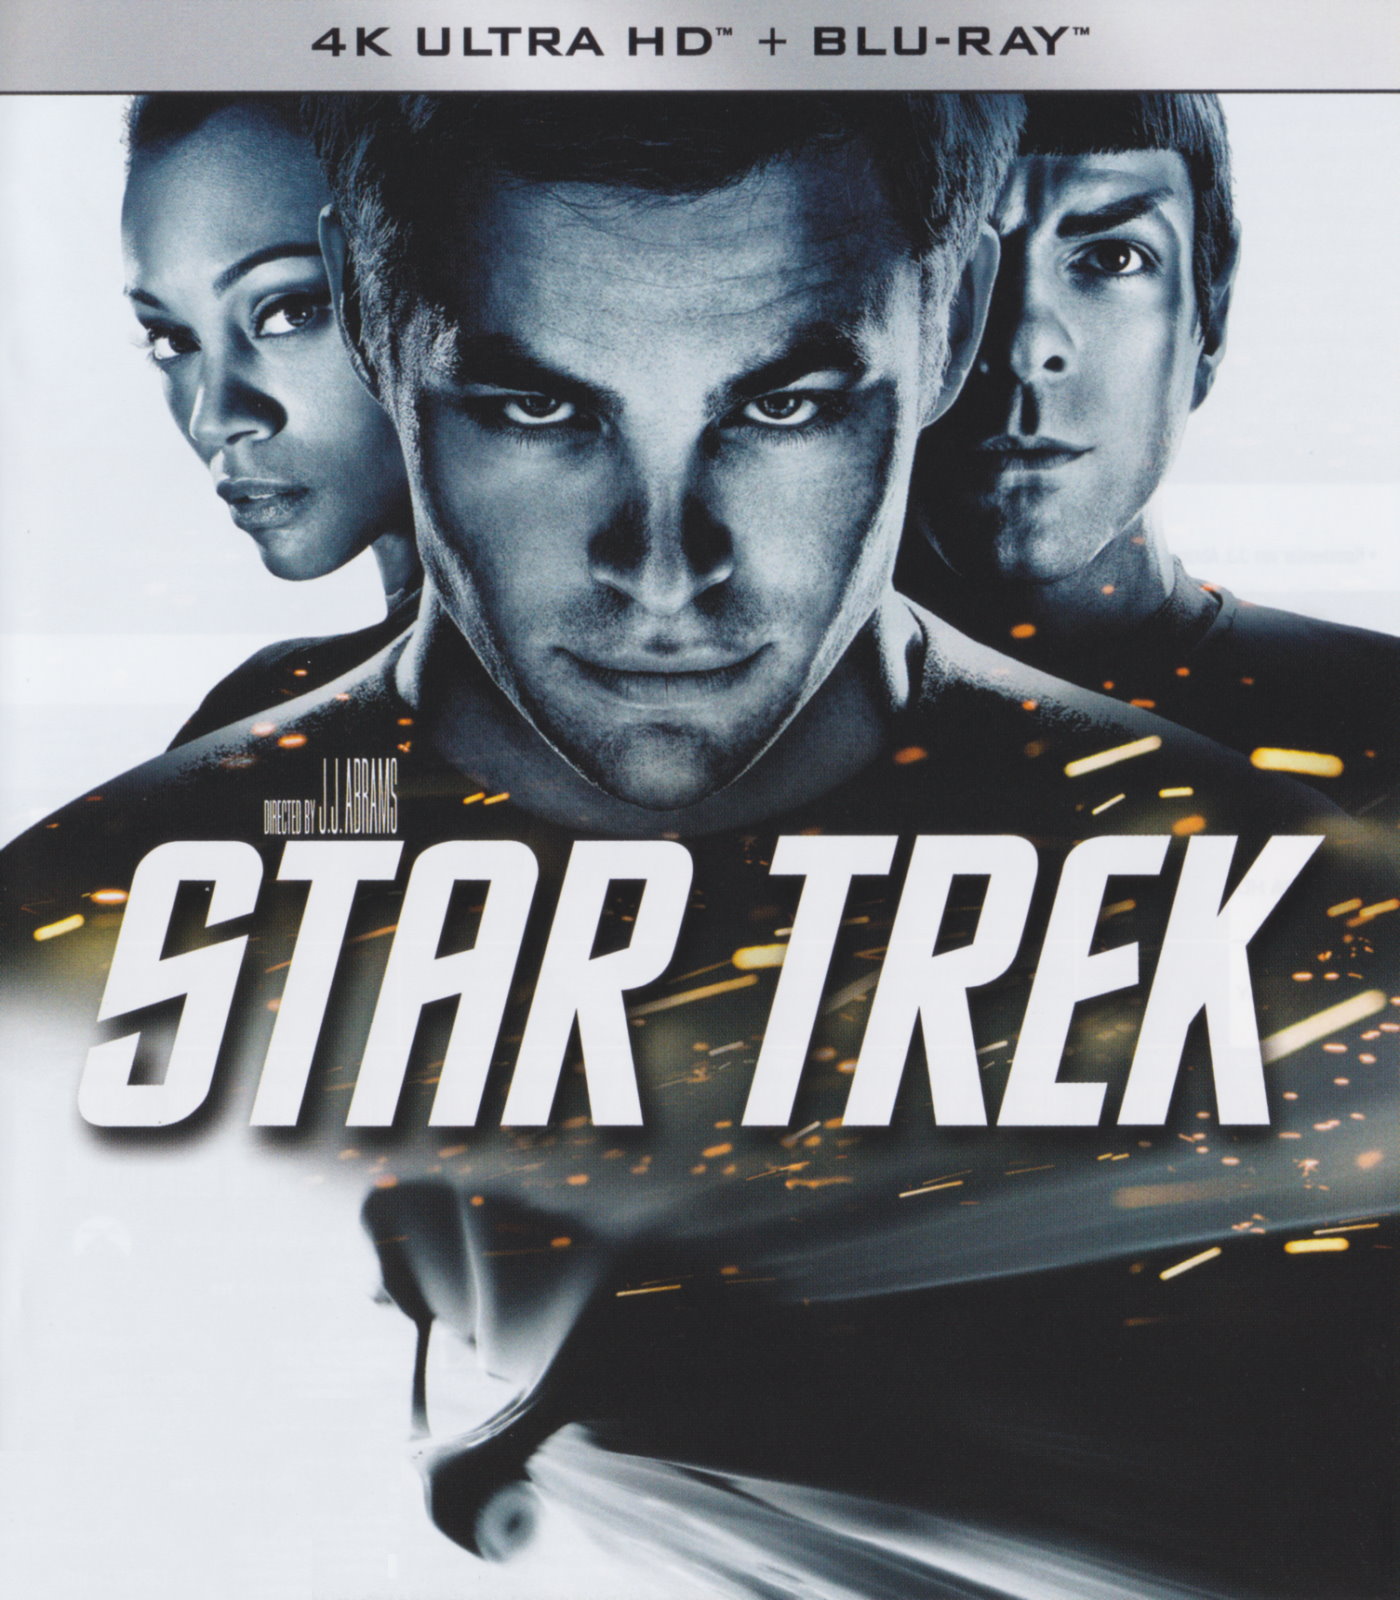 Cover - Star Trek.jpg